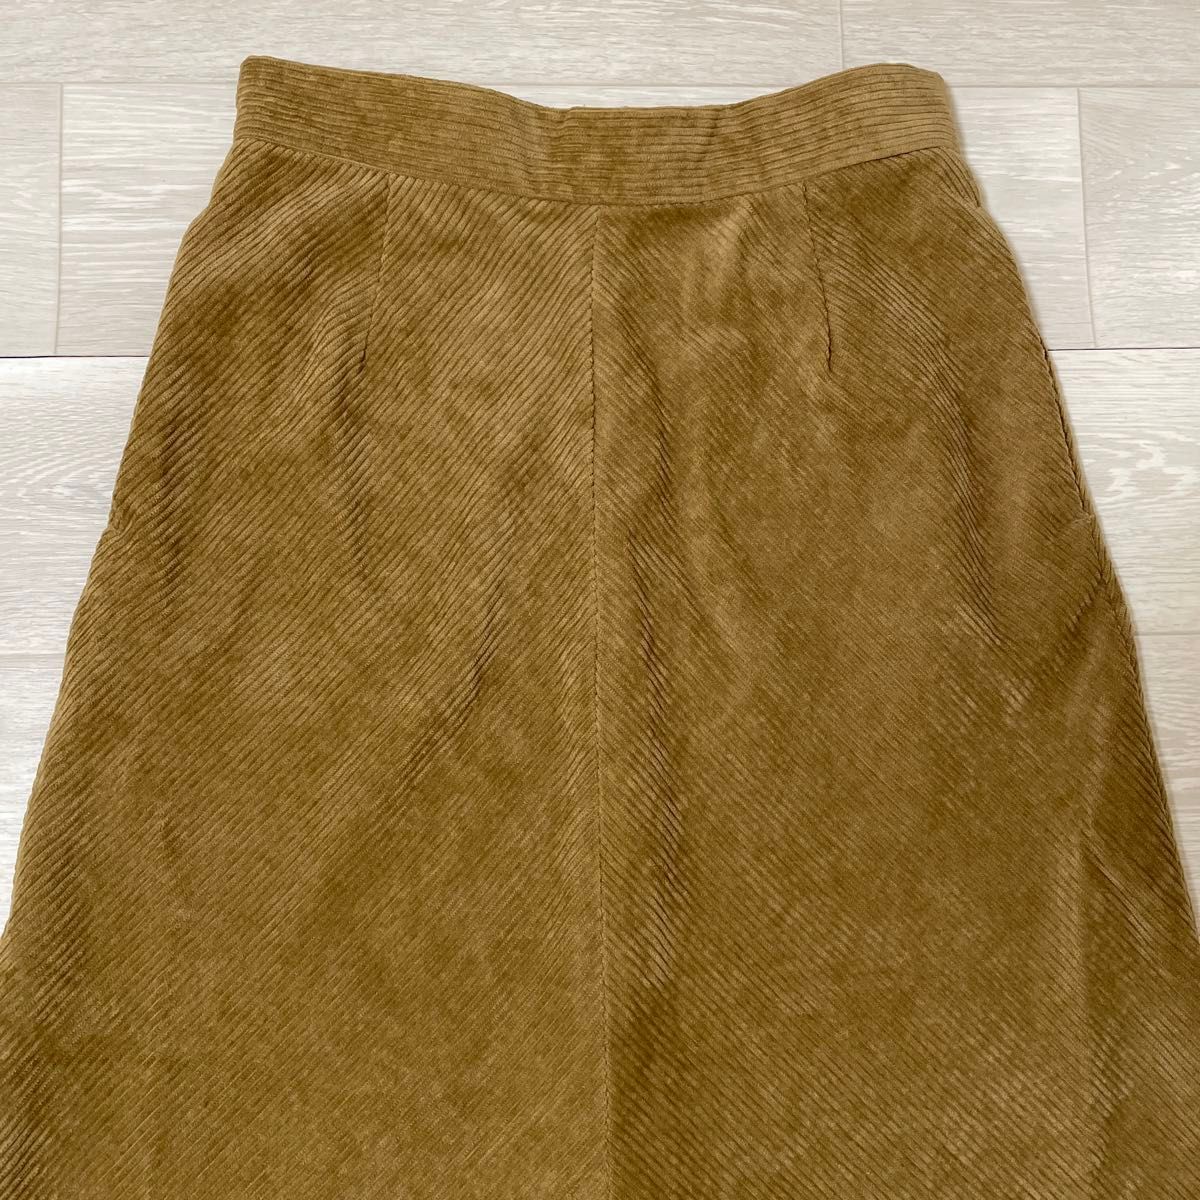 ルノンキュール コーデュロイセミフレアスカート (フリーサイズ) 新品タグ付きロングスカート スカート ロング ウエストゴム